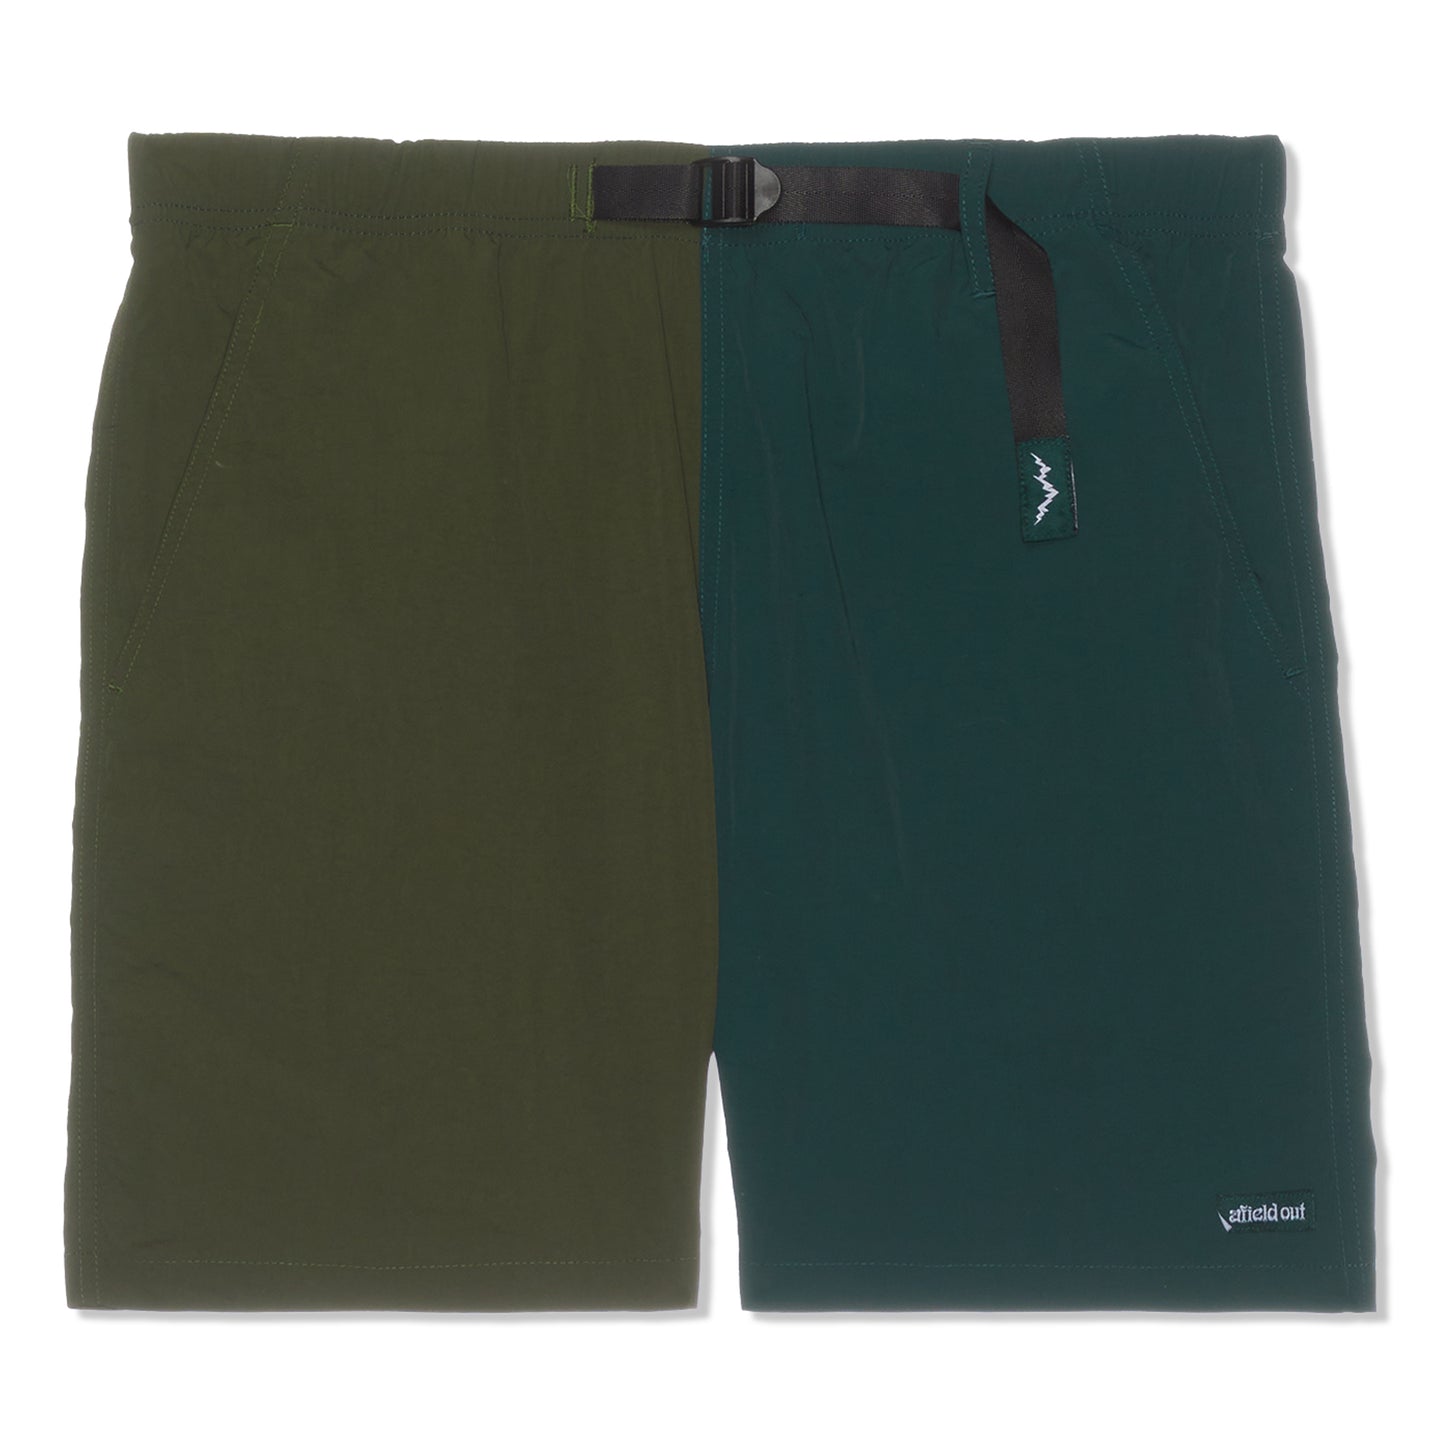 Afield Out Duo Tone Sierra Climbing Shorts (Green)